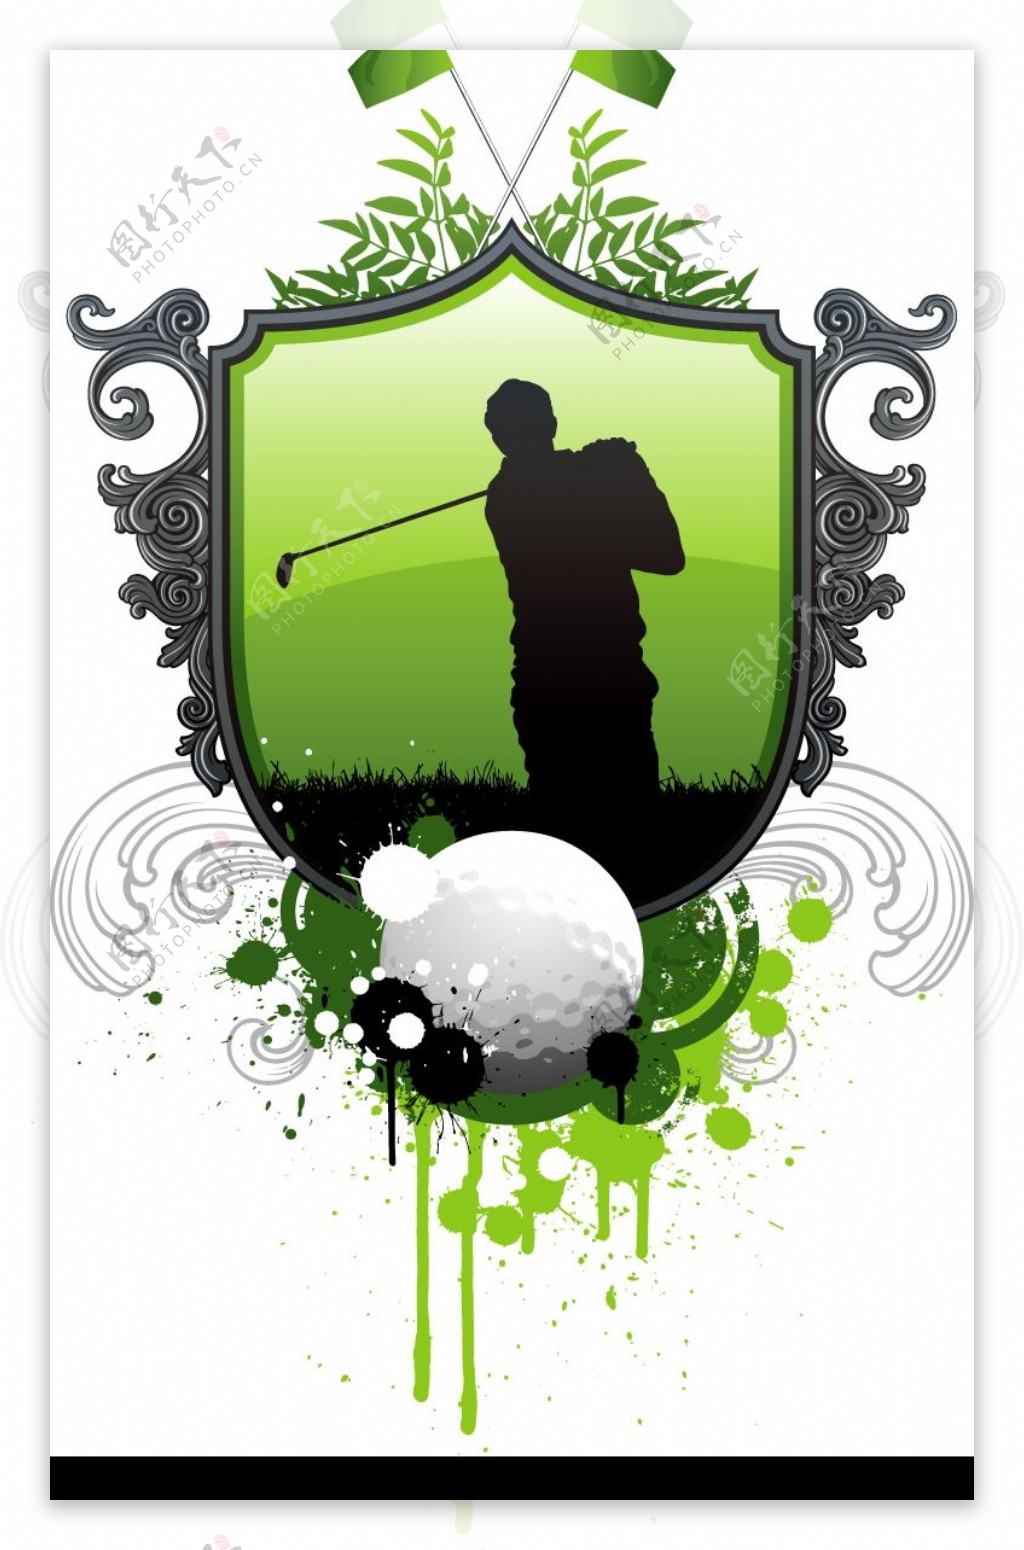 高尔夫与足球主题矢量素材图片